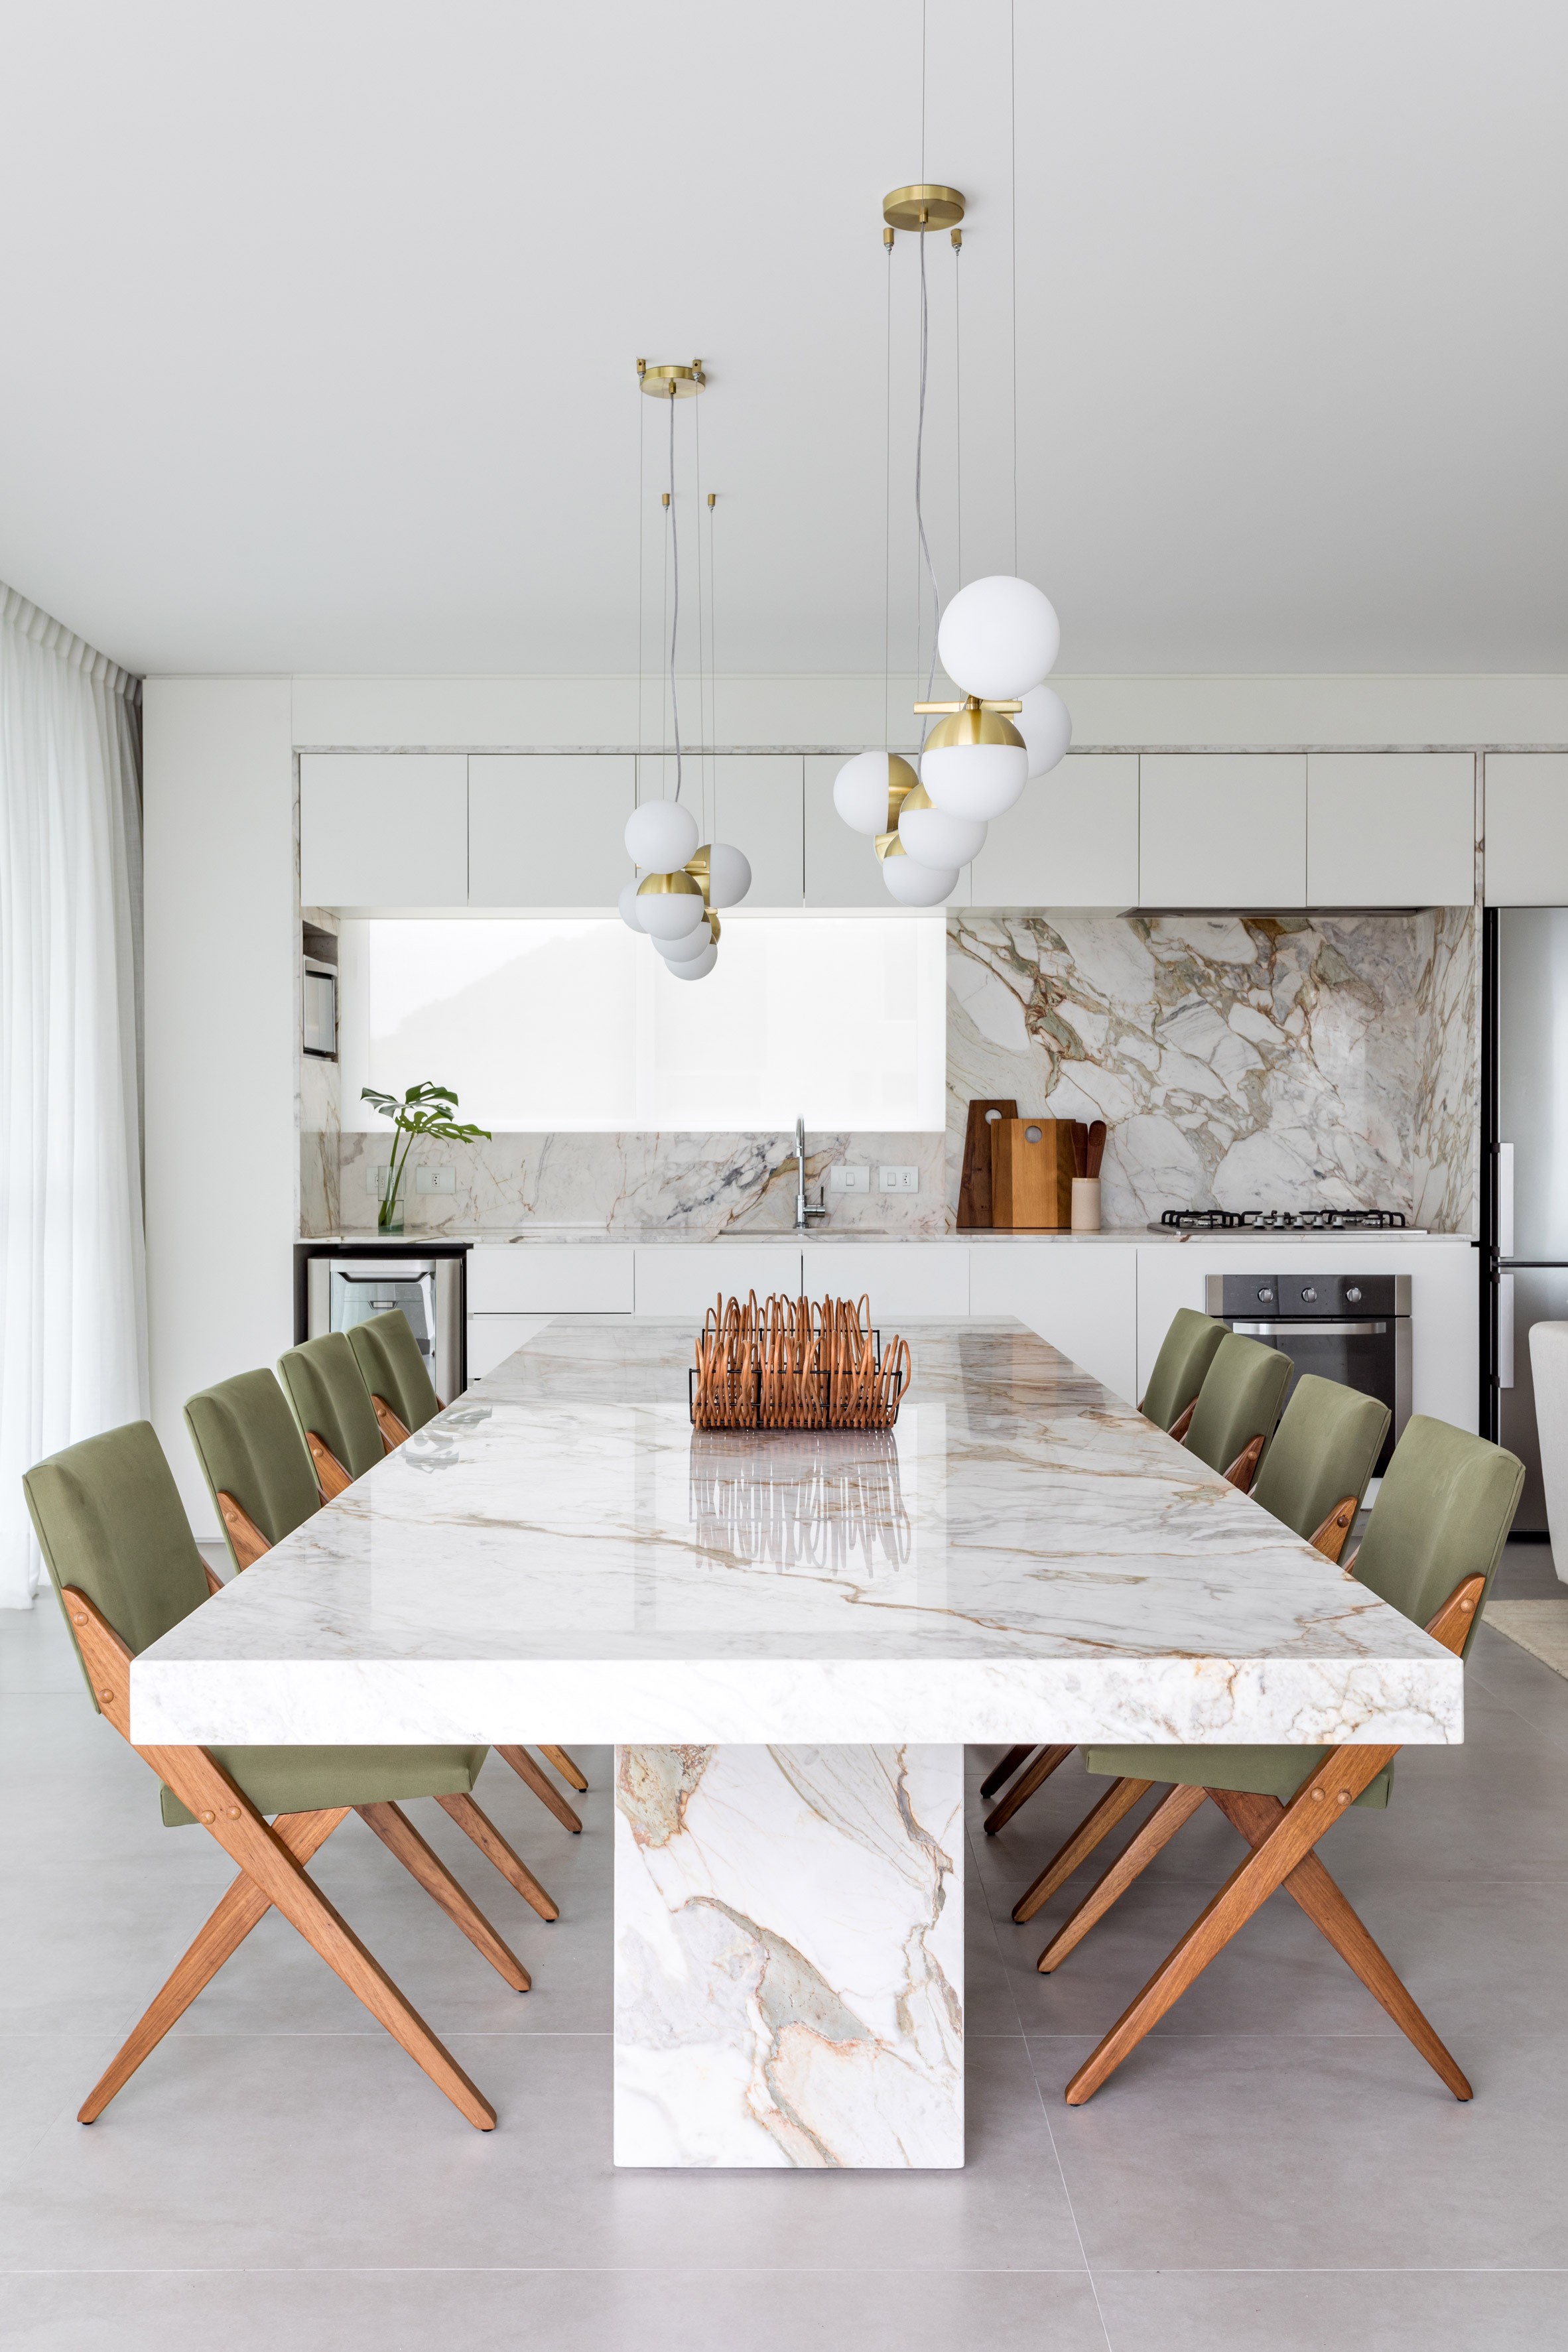 Décor do dia: sala de jantar com mármore e toques dourados (Foto: Fran Parente)